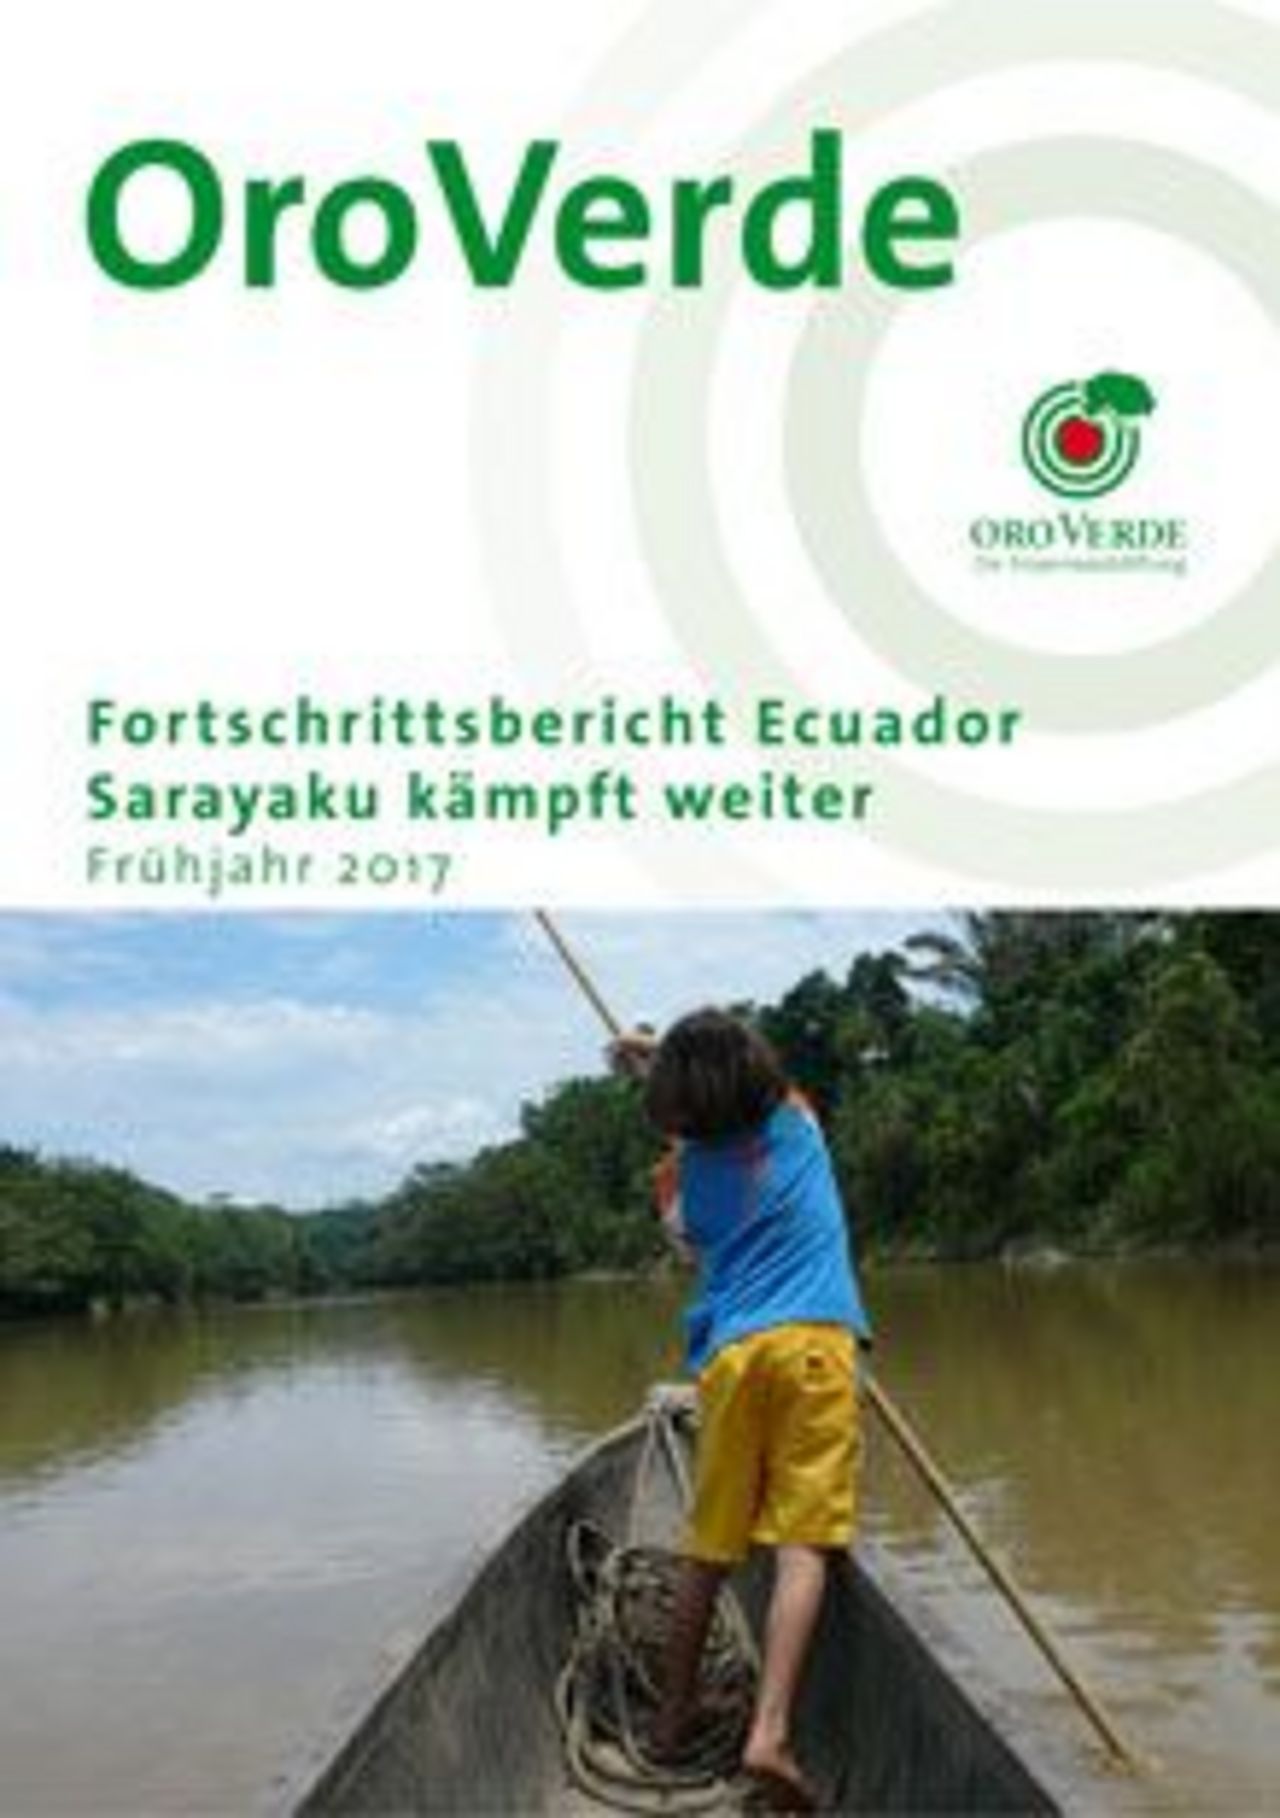 Regenwaldschutz mit OroVerde: Projektbericht Ecuador 2017 | Fortschritte im Regenwaldschutz